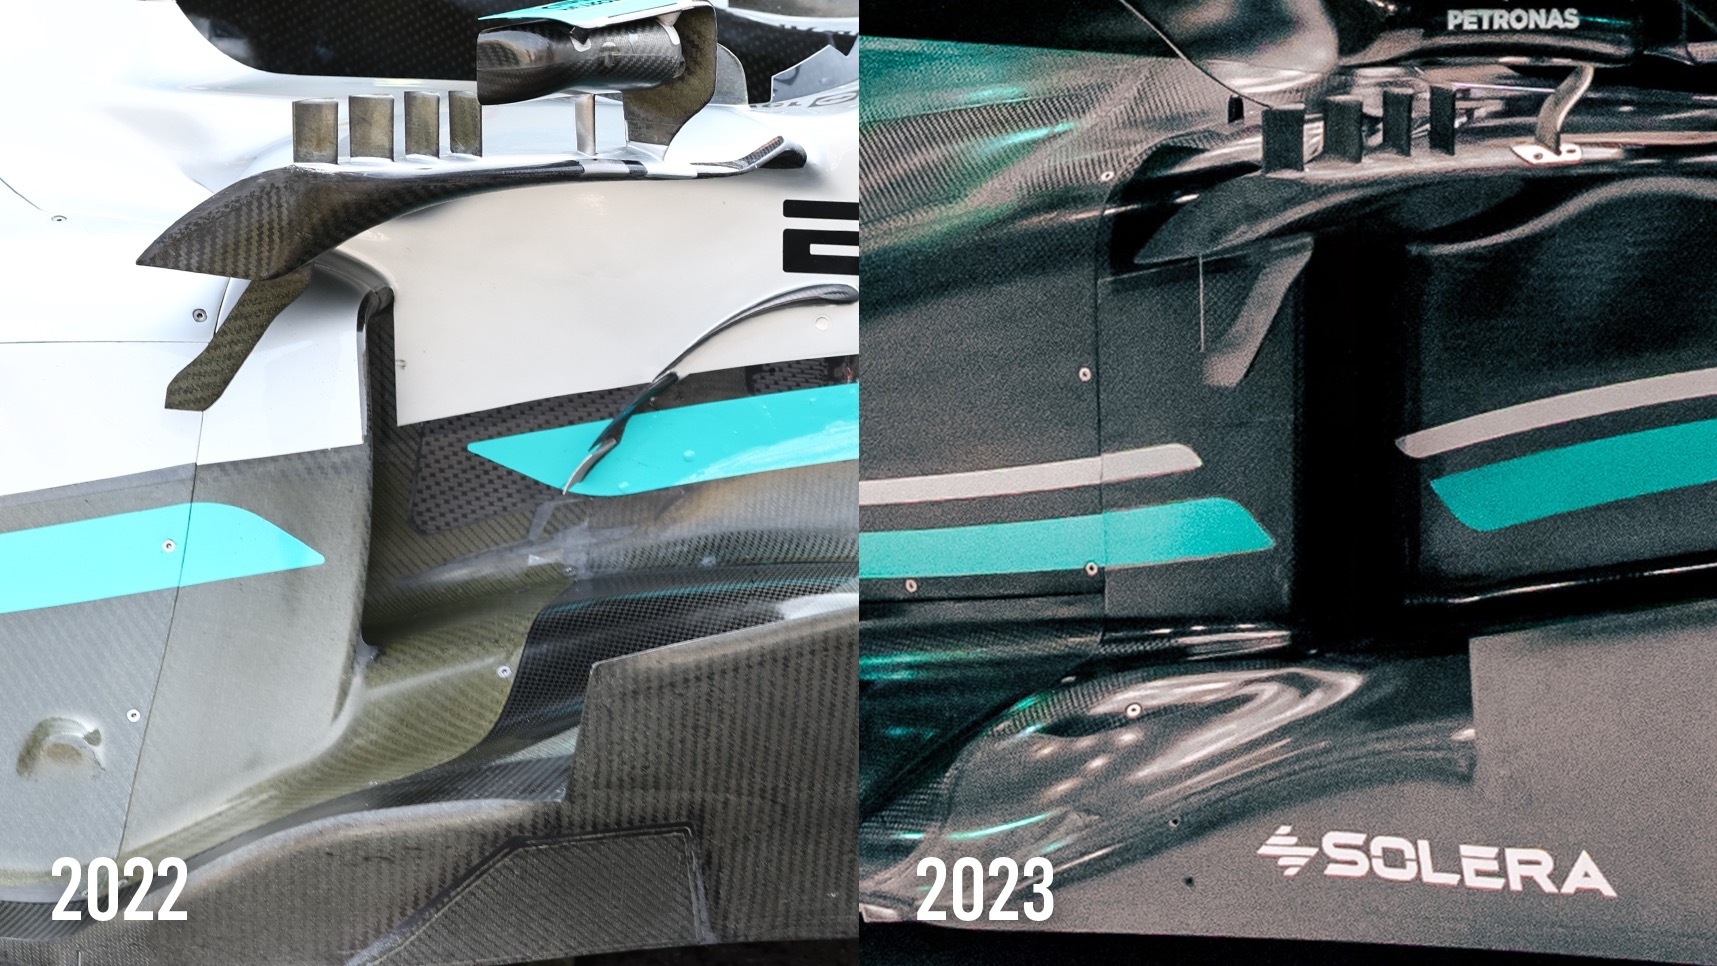 Mercedes W13 W14 F1 comparison